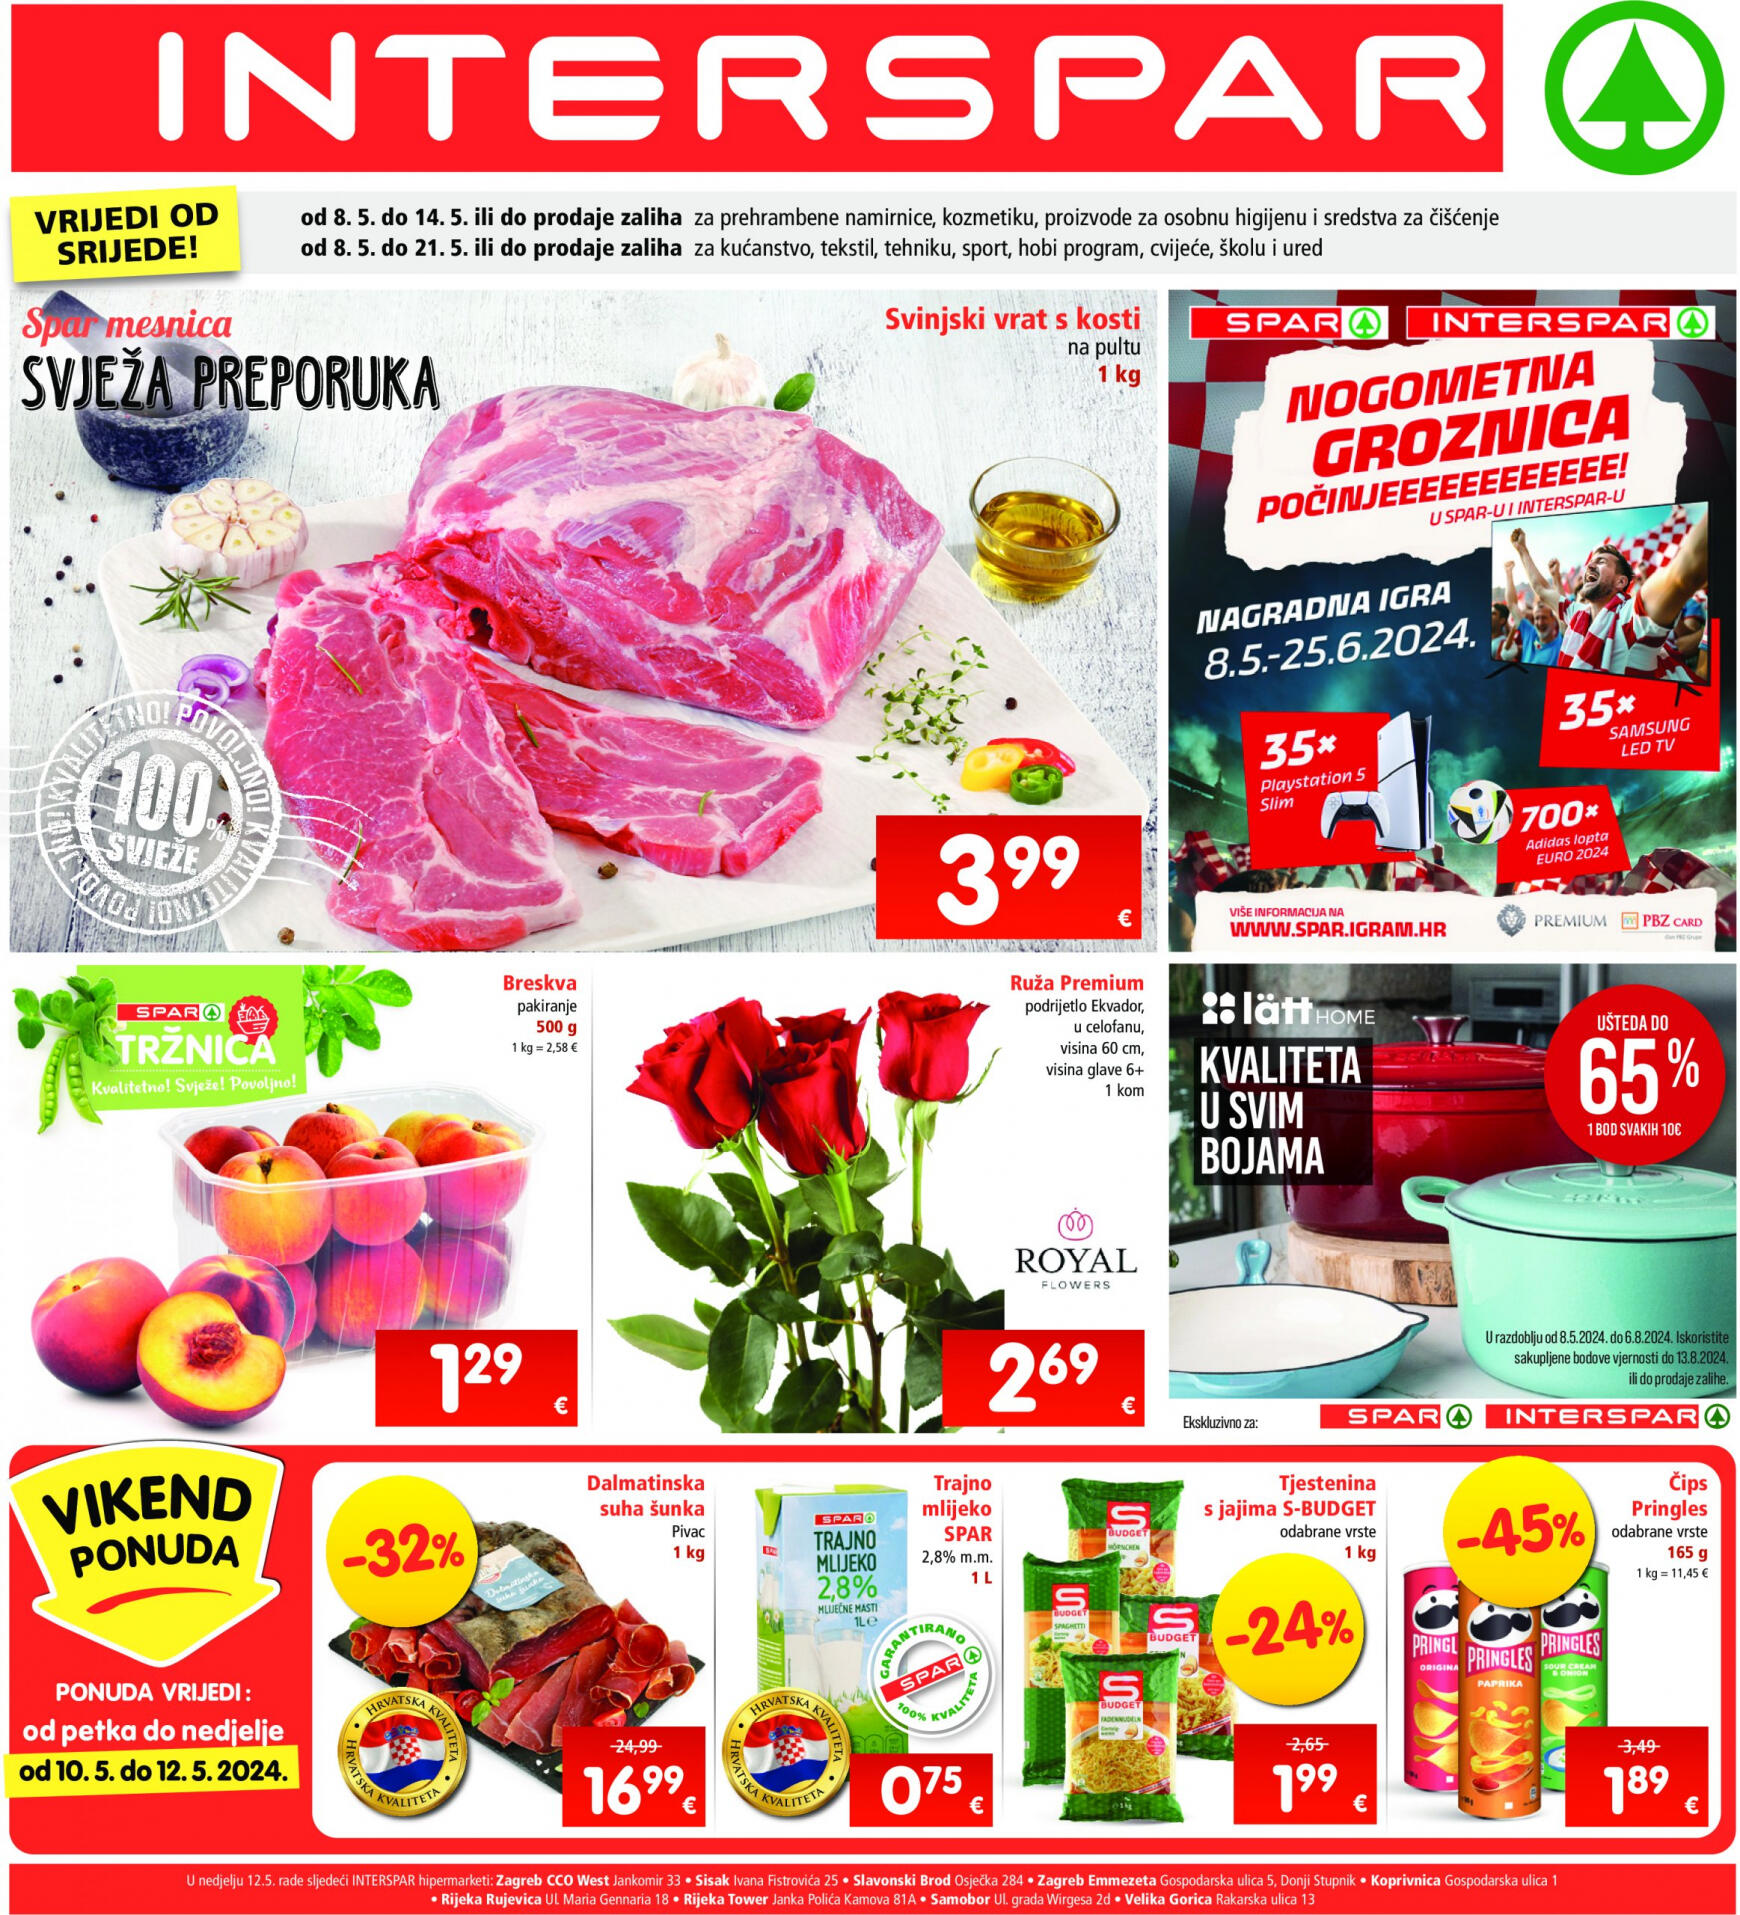 spar - Novi katalog INTERSPAR 08.05. - 14.05. - page: 1